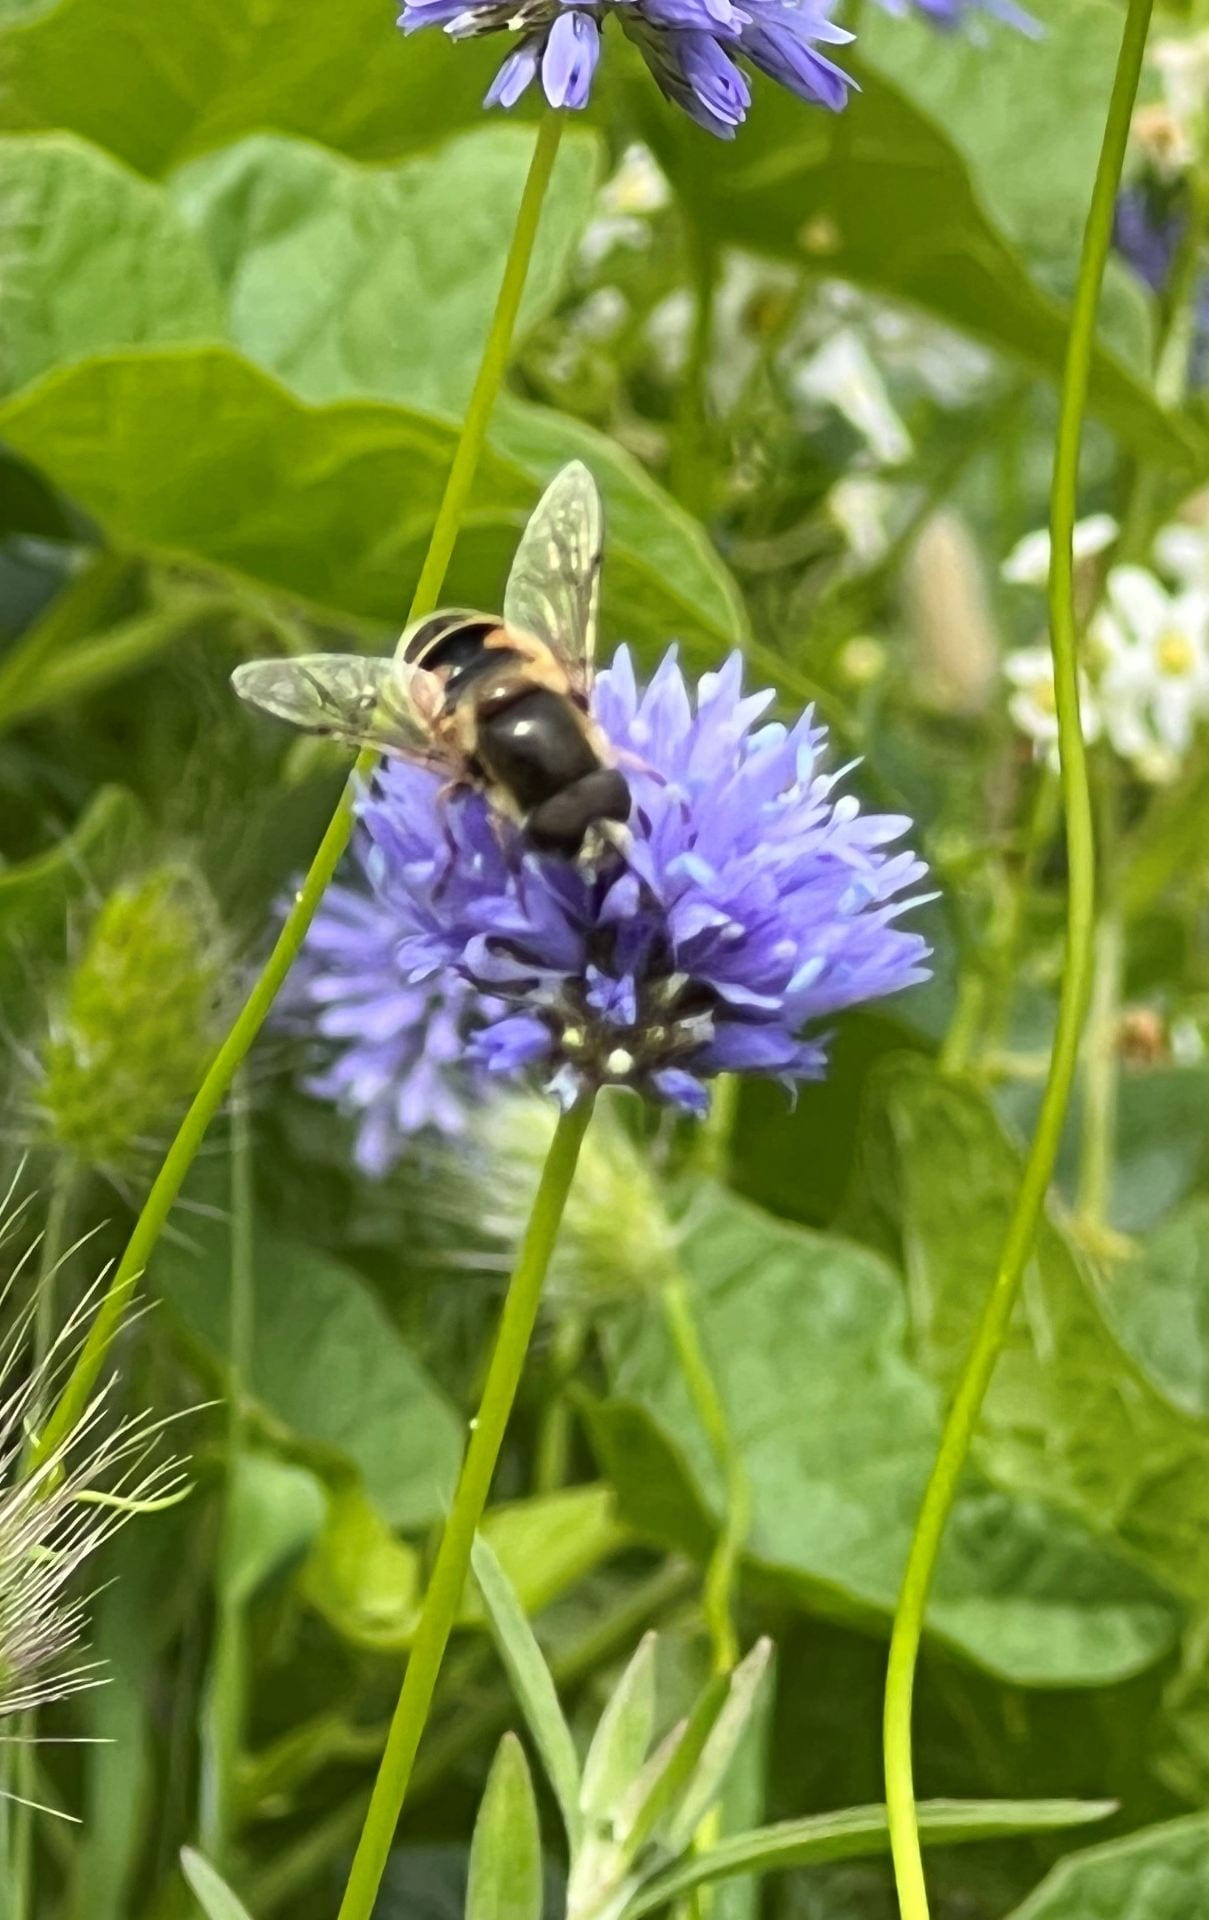 bee on blue flower